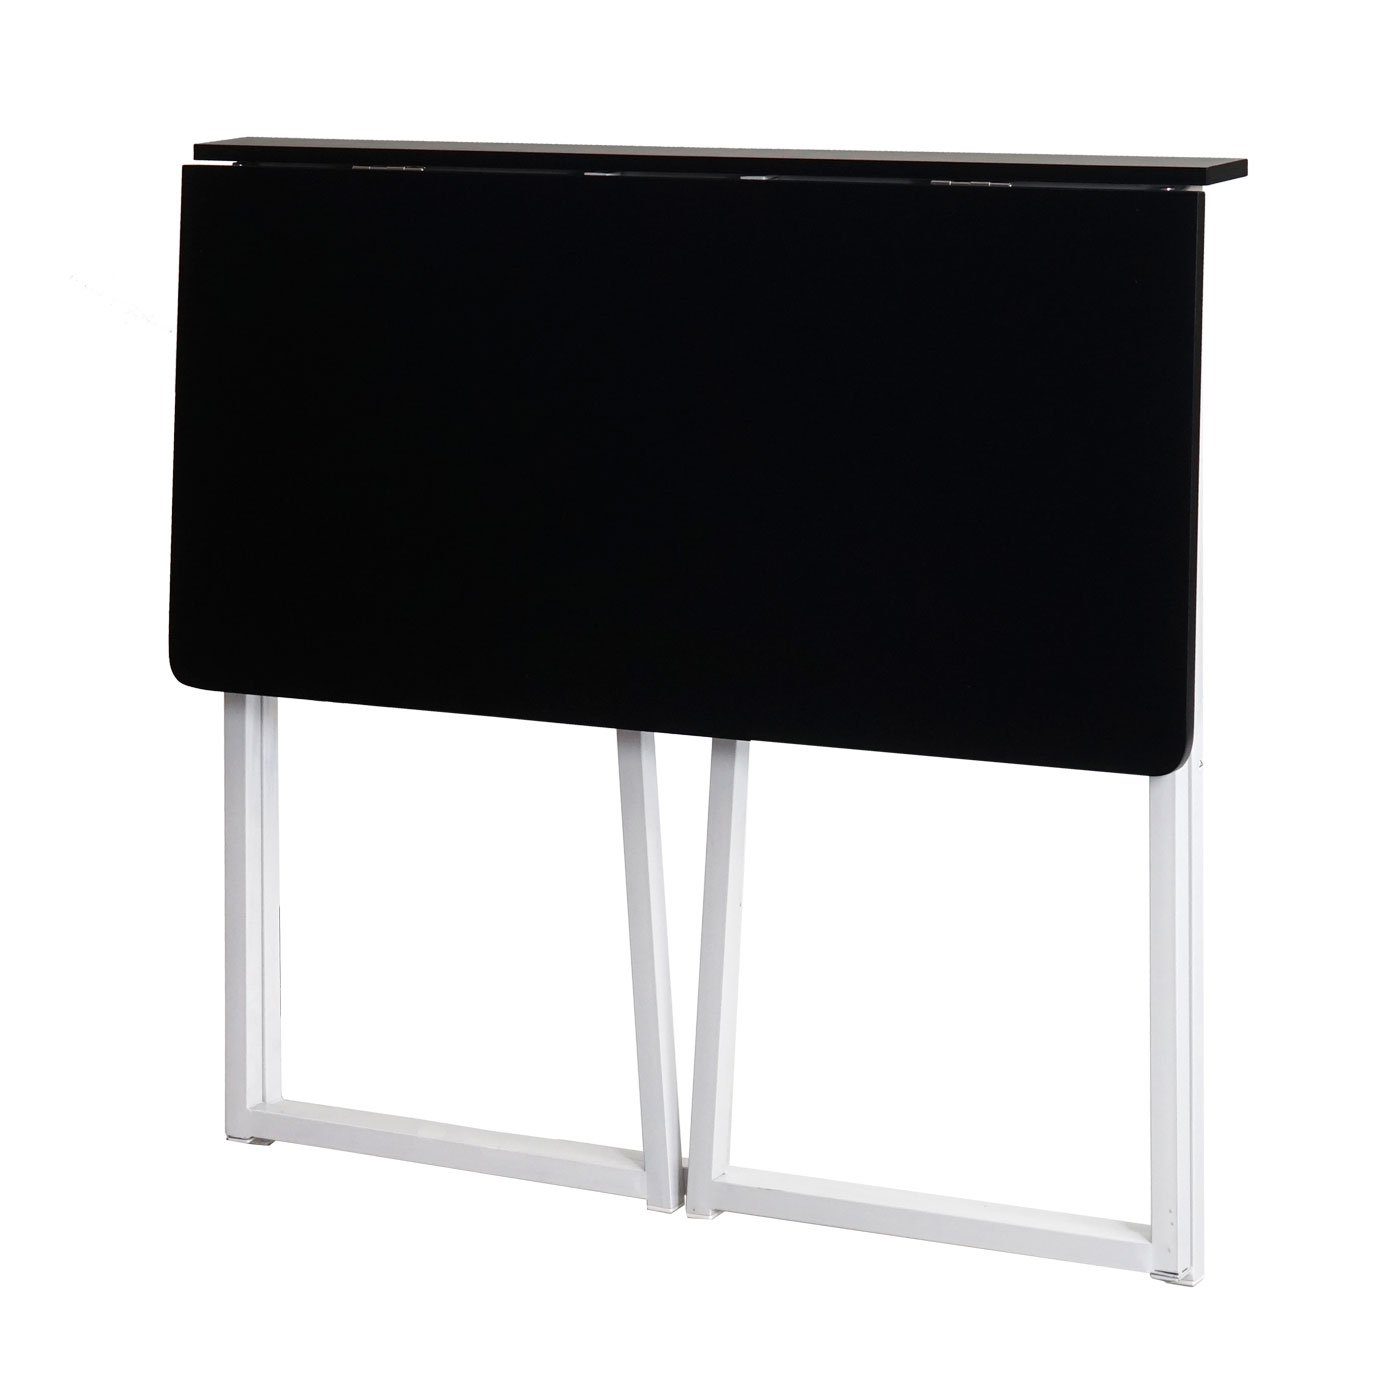 | schwarz-weiß zusammen Platzsparend MCW-K67, schwarz Klappbar weiß Schreibtisch klappbar, MCW |